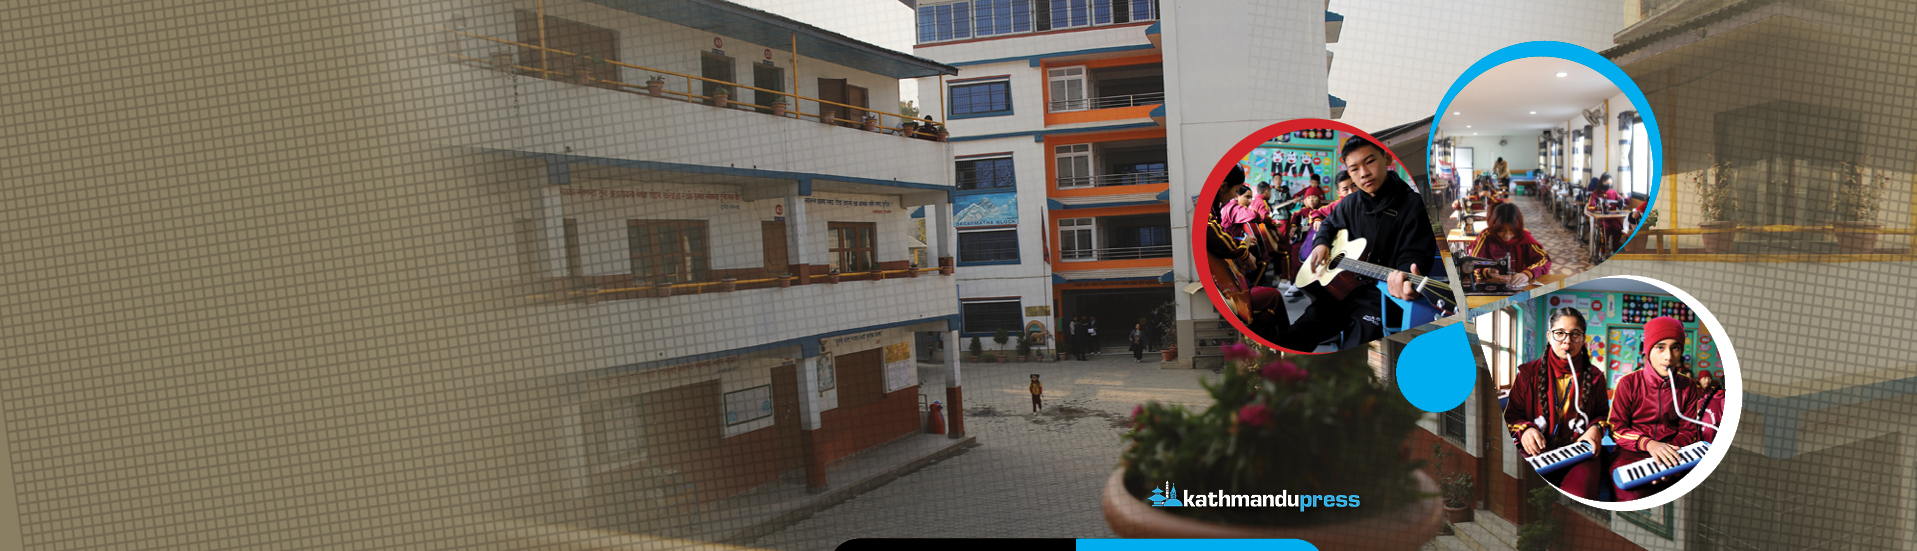 काठमाडौंको सामुदायिक विद्यालय : जहाँ पढाइसँगै सिकाइन्छ चित्रकला, संगीत र सिलाइबुनाइ (भिडियाे)